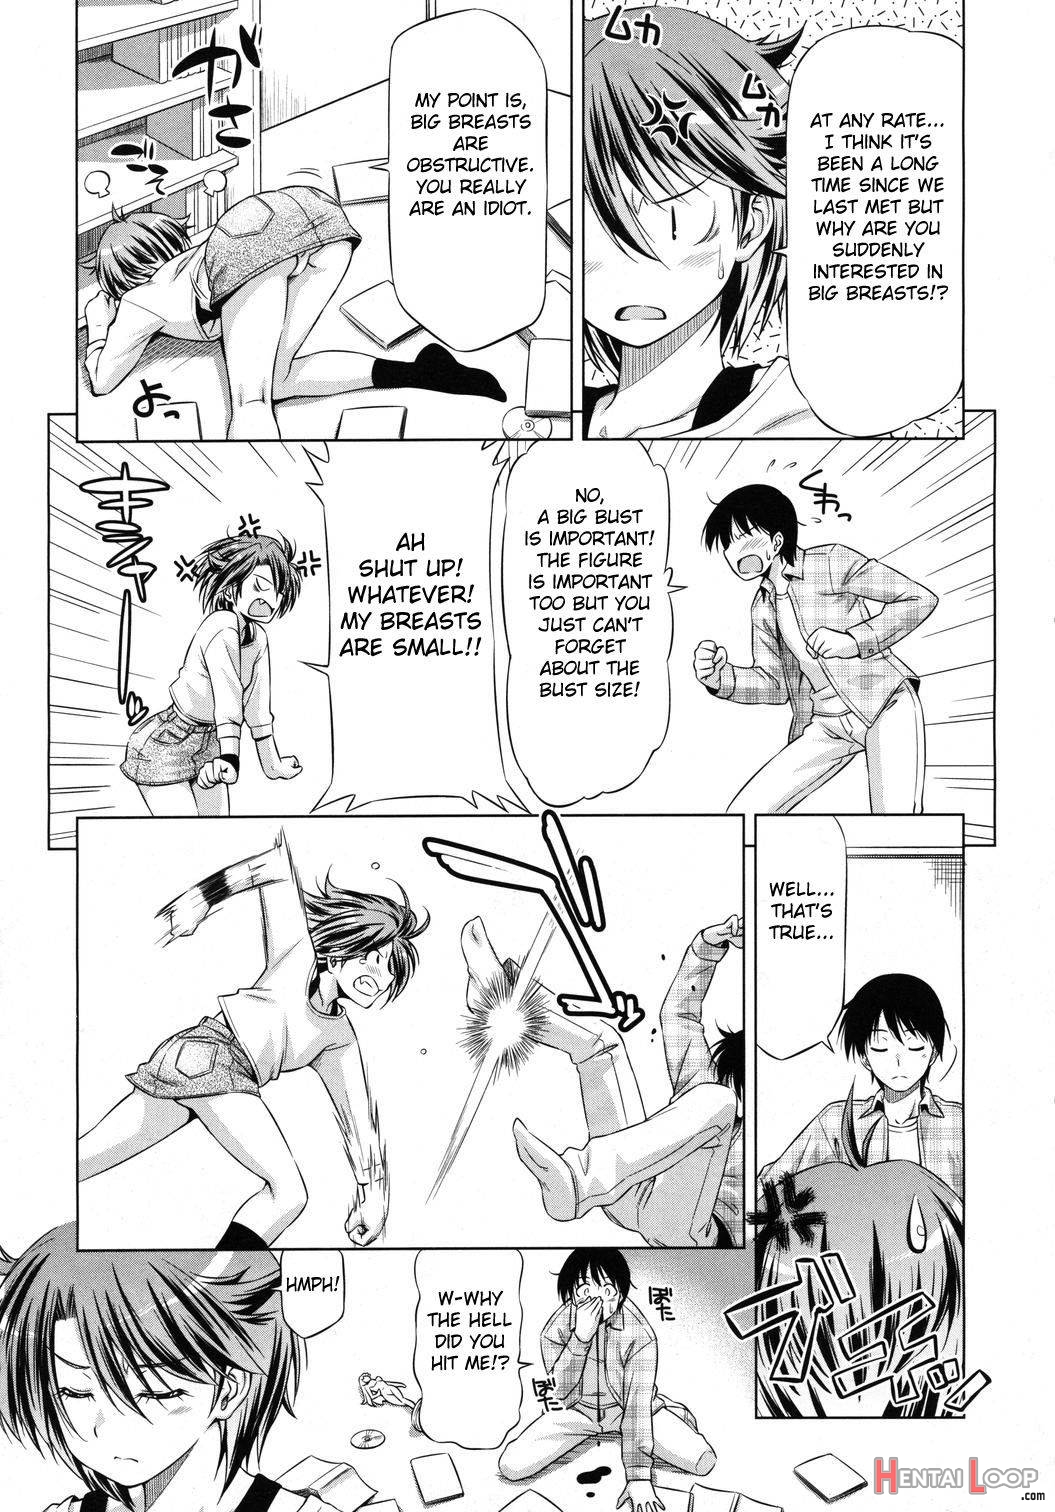 Rukino Versus Kei-niichan page 5